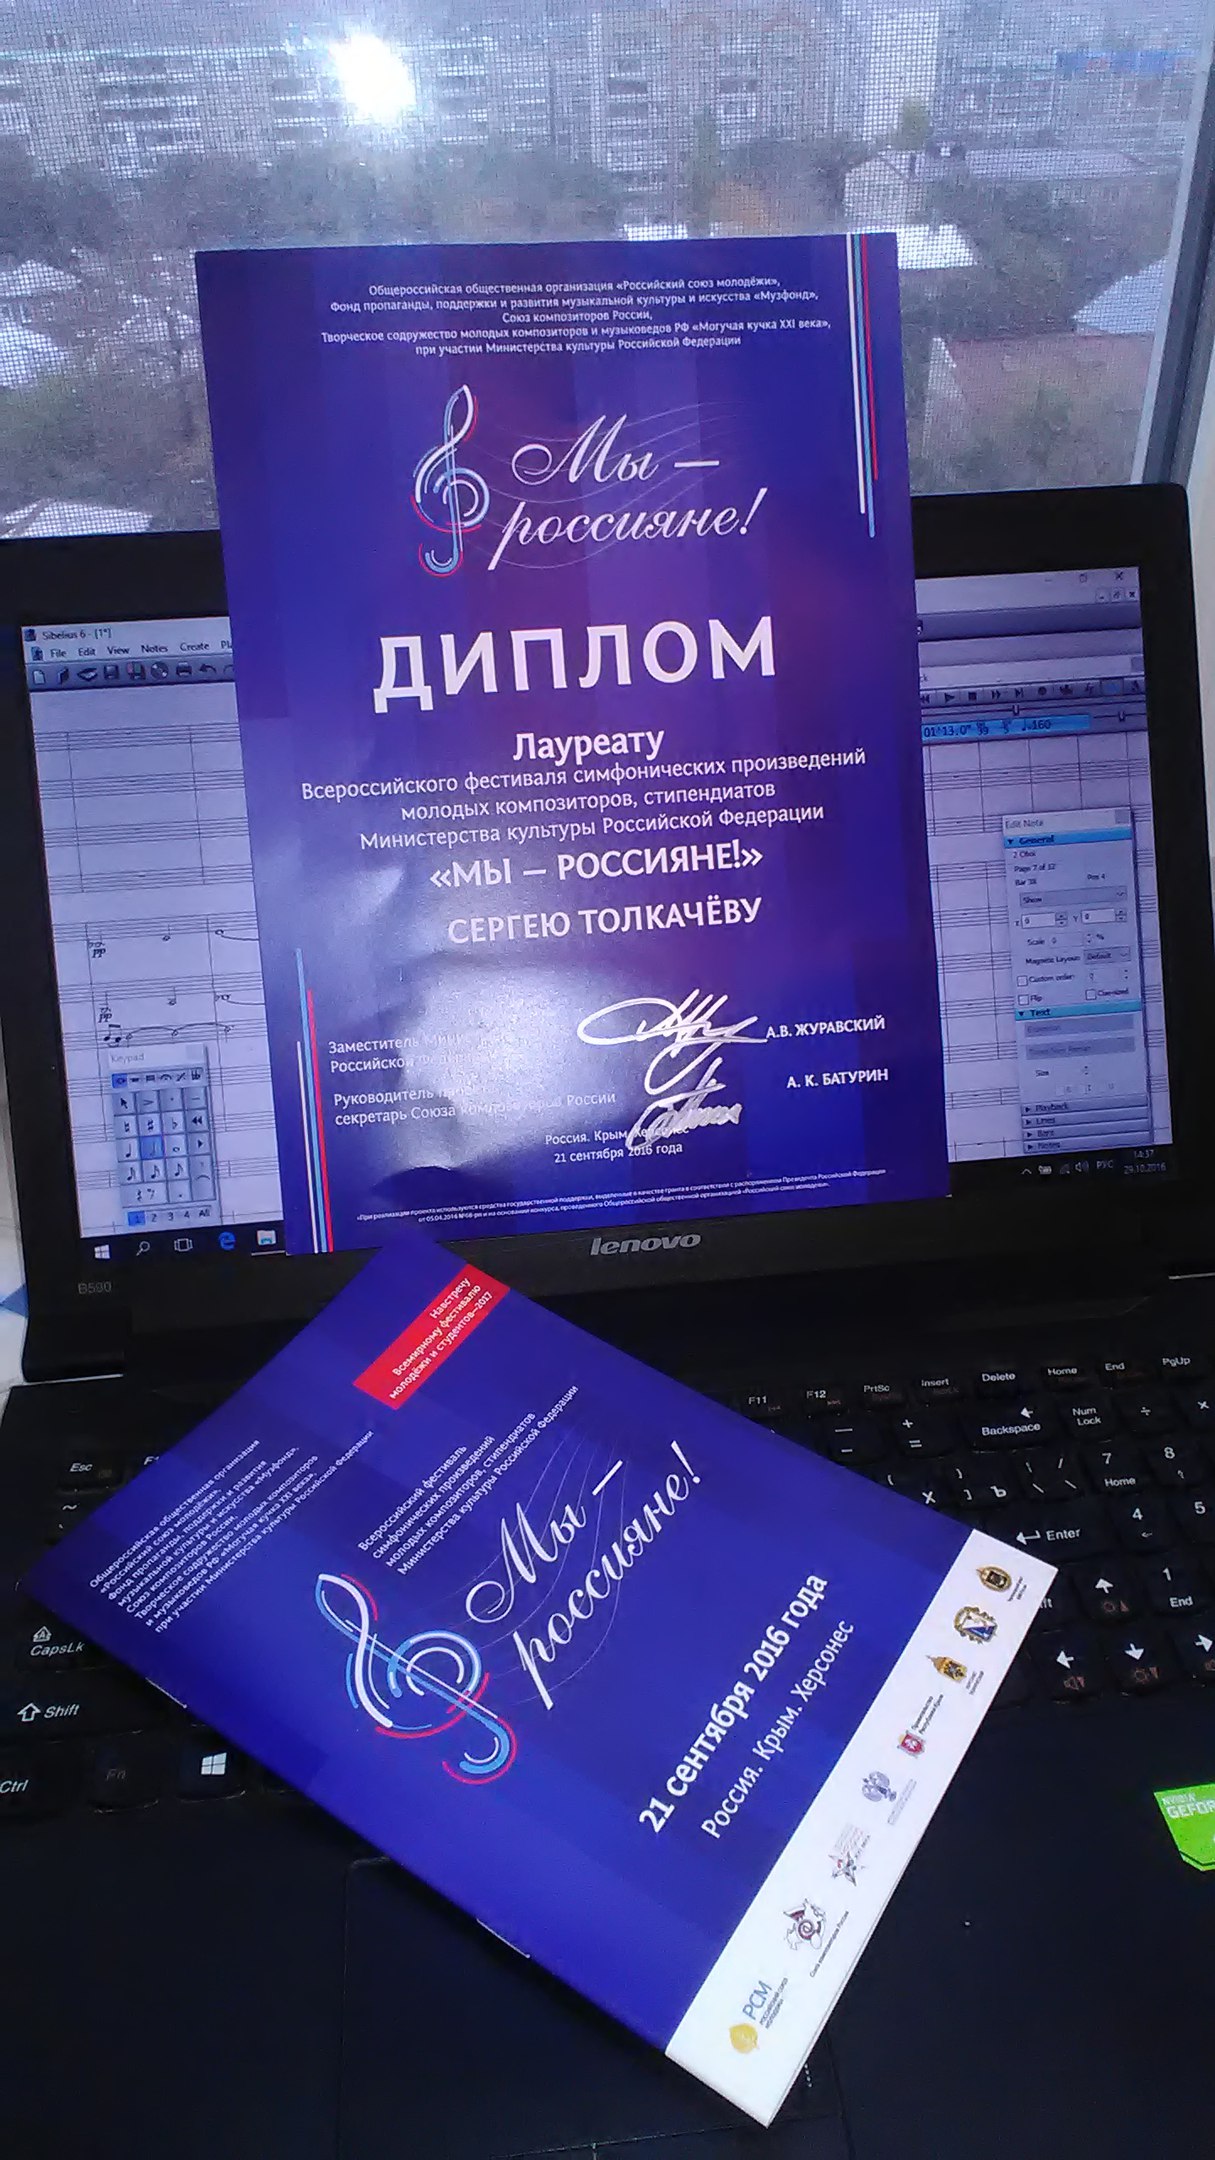 Диплом фестиваля симфонической музыки Мы - россияне